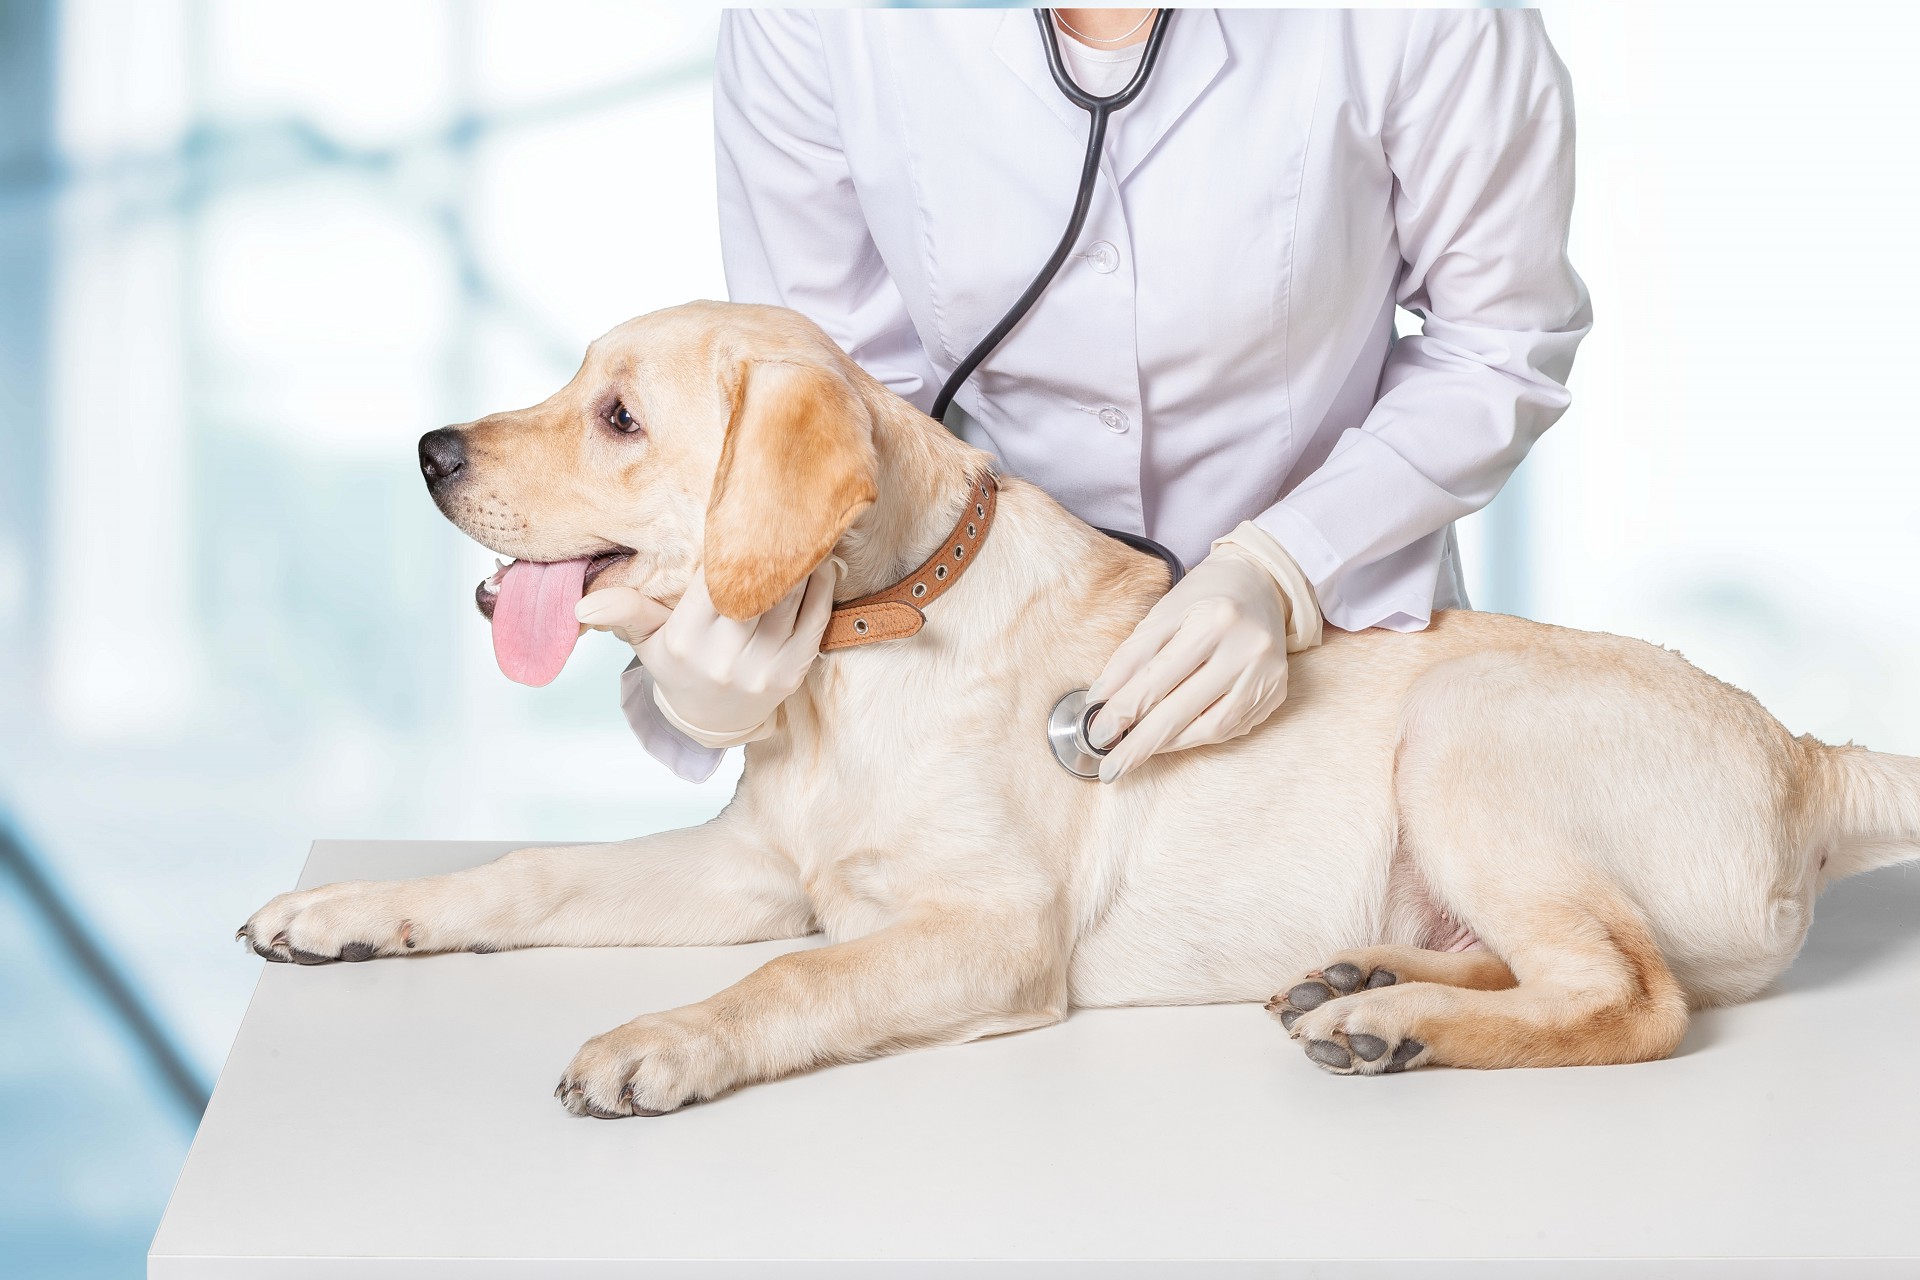 Поликлиника "Добровет" продолжает оказывать профессиональную ветеринарную помощь